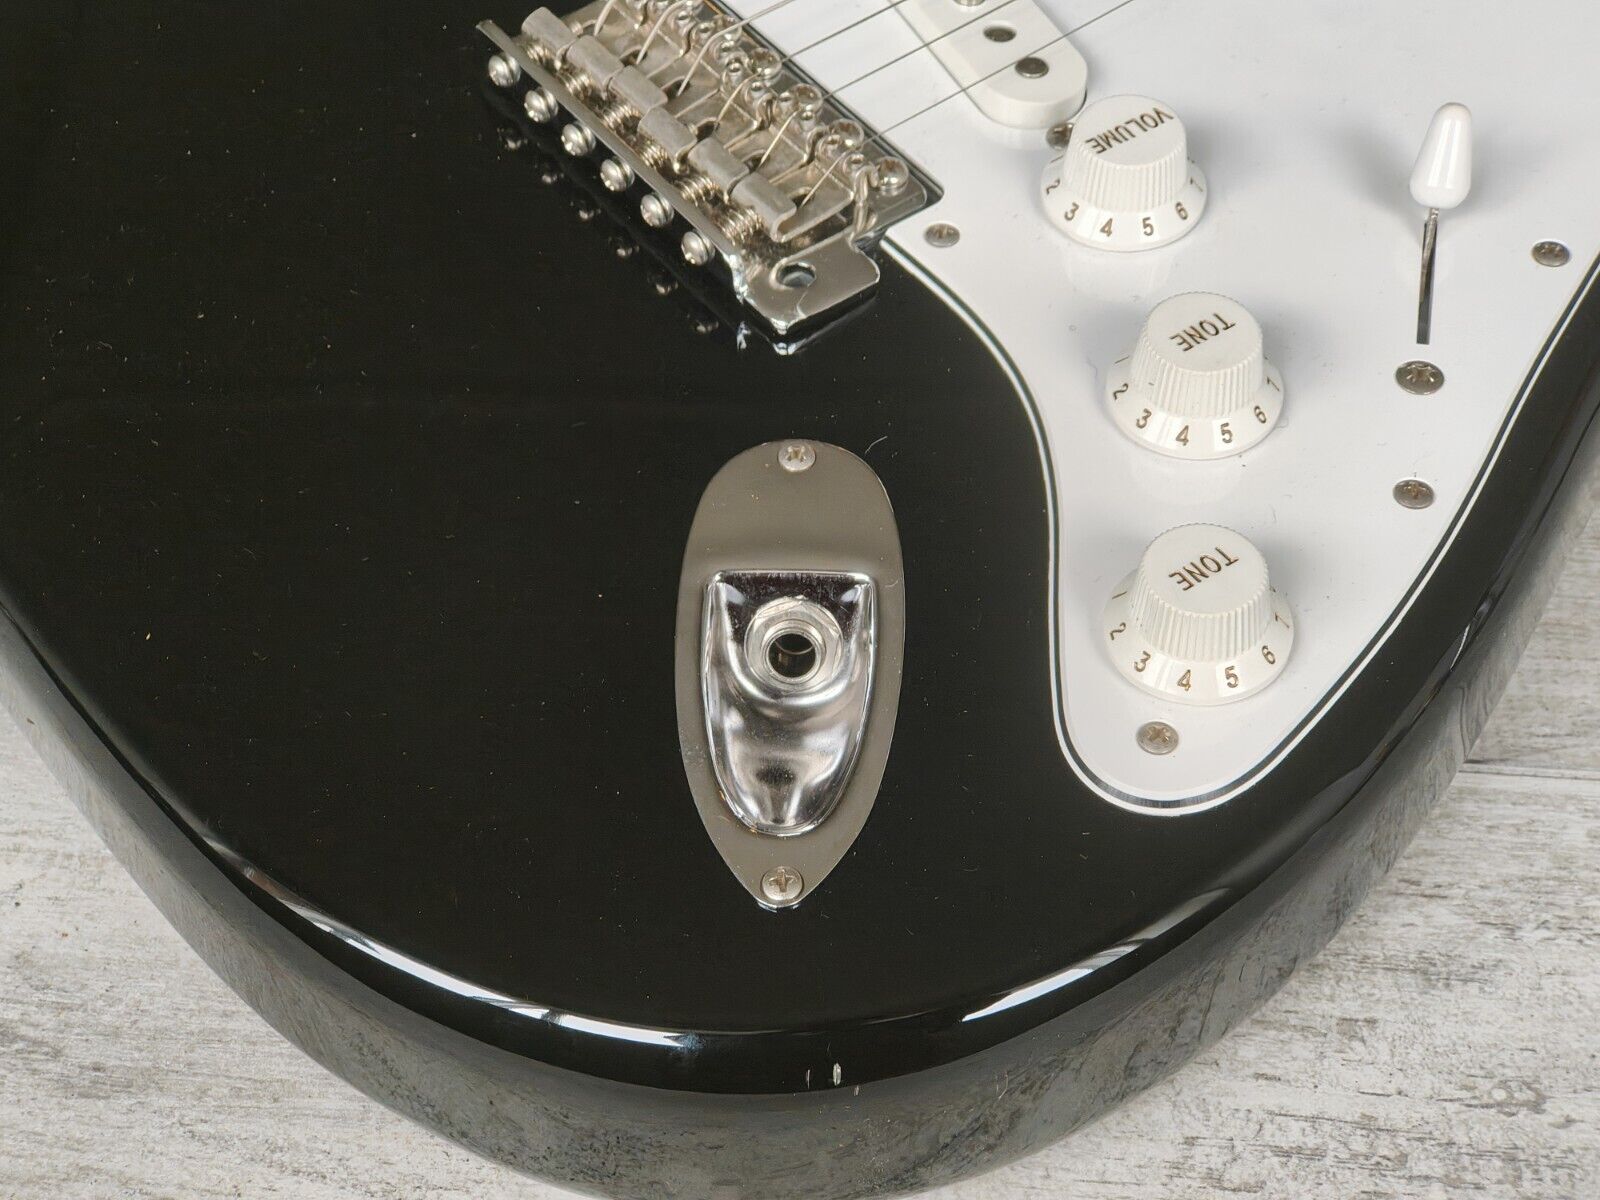 2007 Fender Japan Stratocaster Standard (Black)